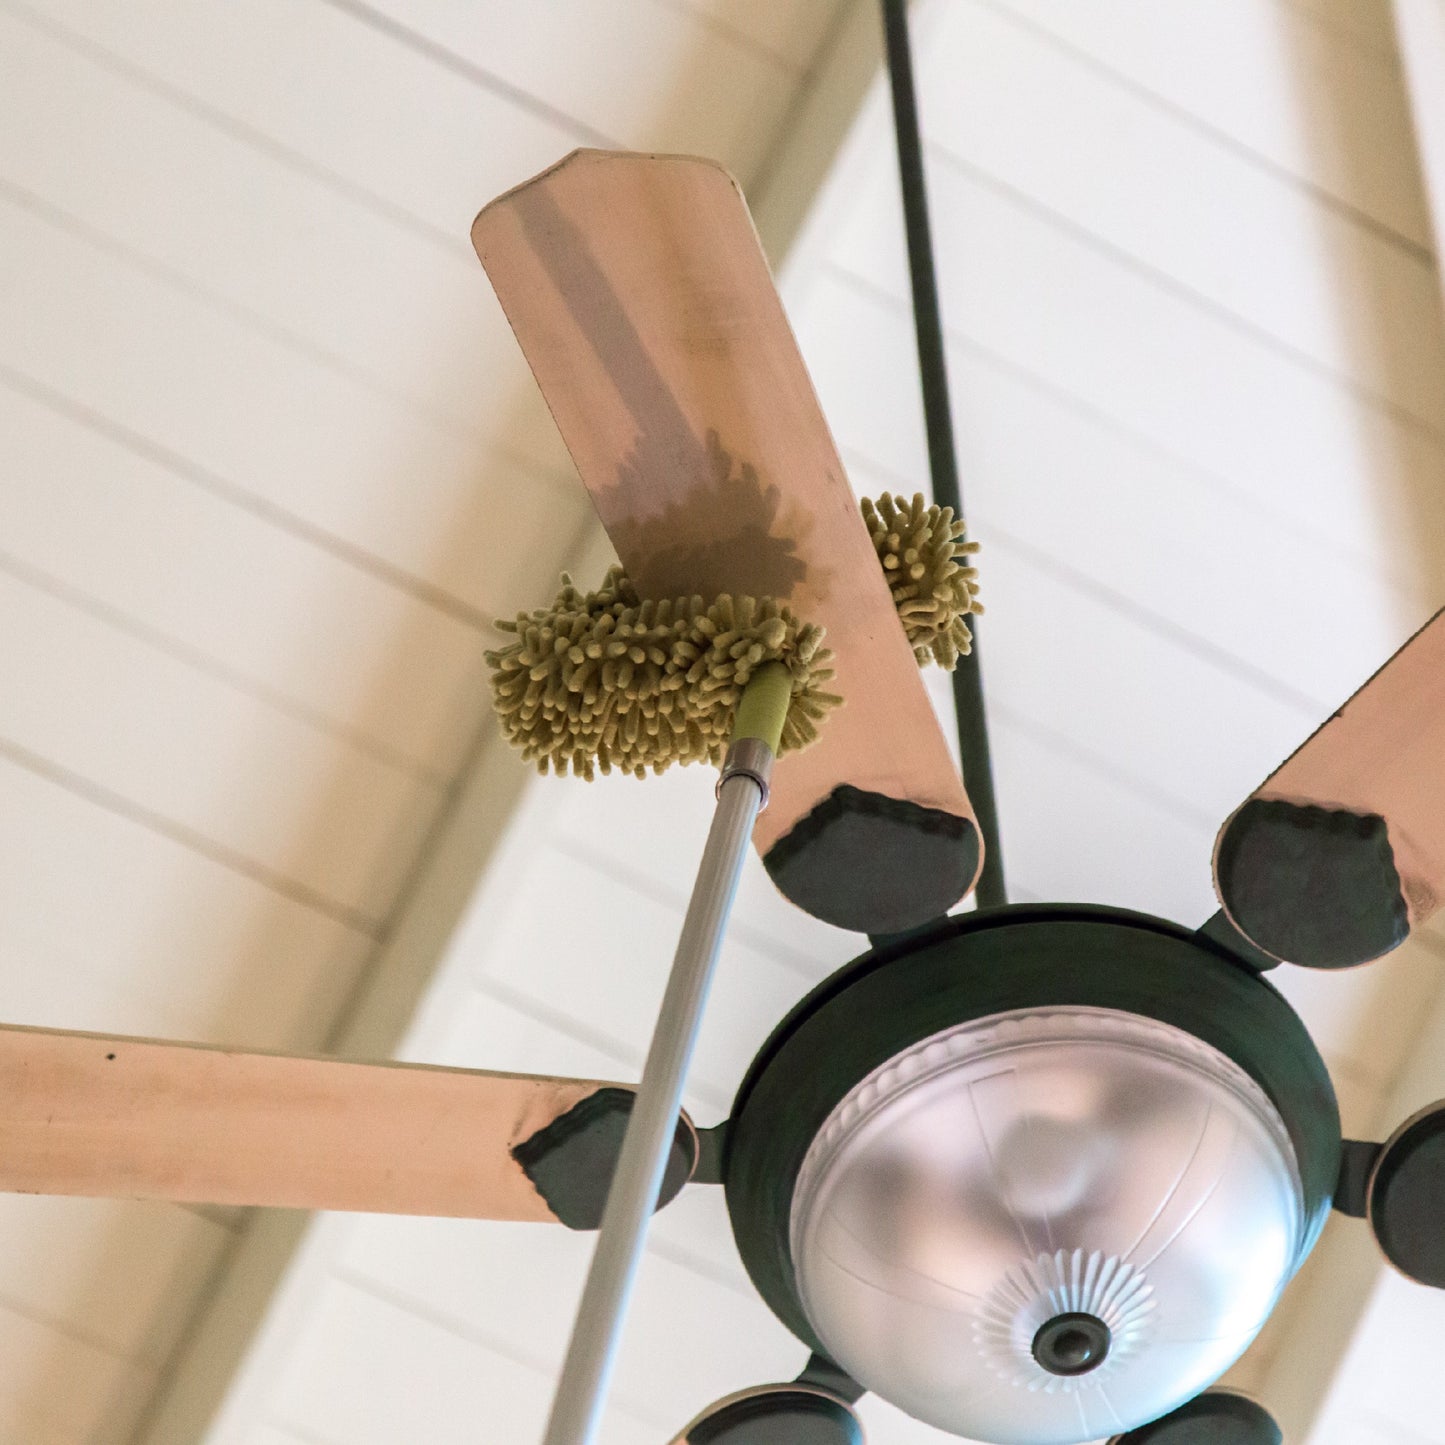 flex fan duster in action cleaning ceiling fan